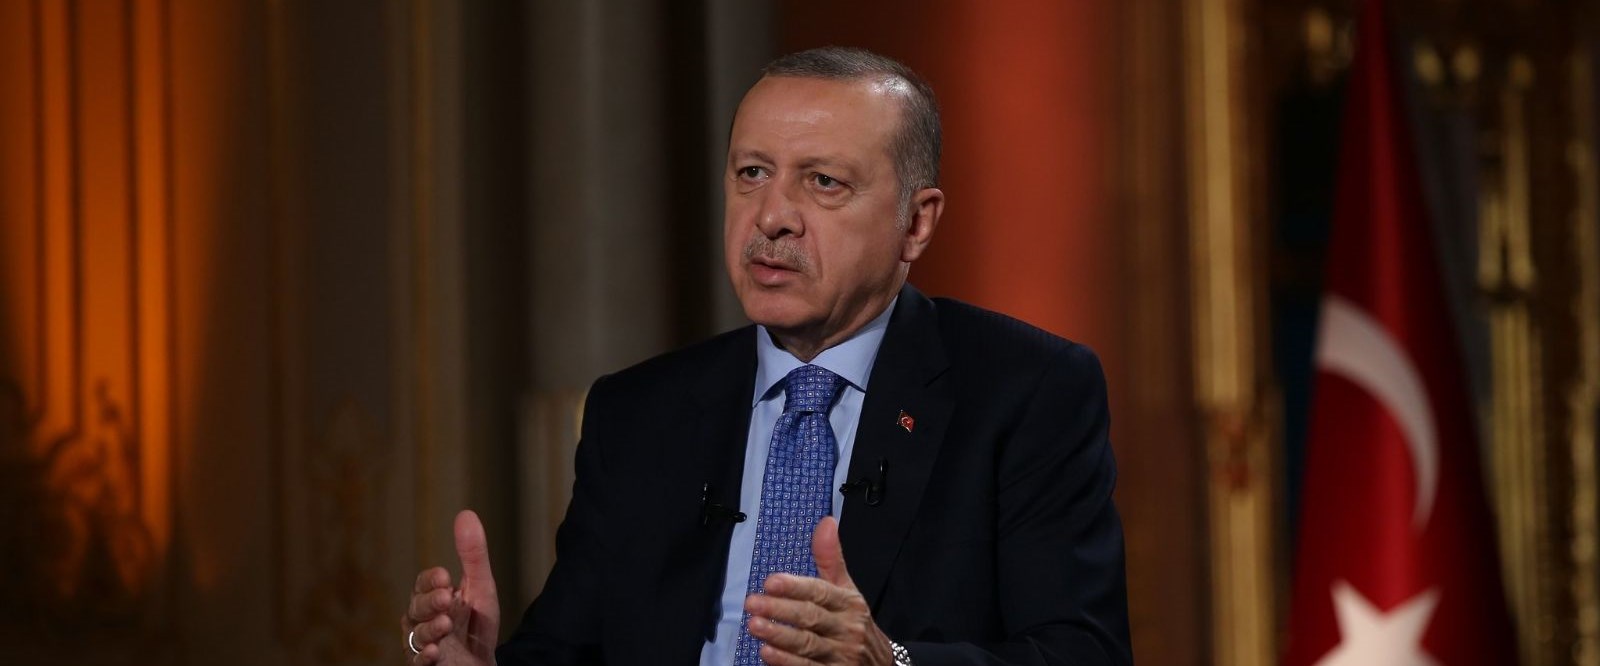 Cumhurbaşkanı Erdoğan: S-400 konusunda işi bitirdik, geri dönüşümüz asla olamaz